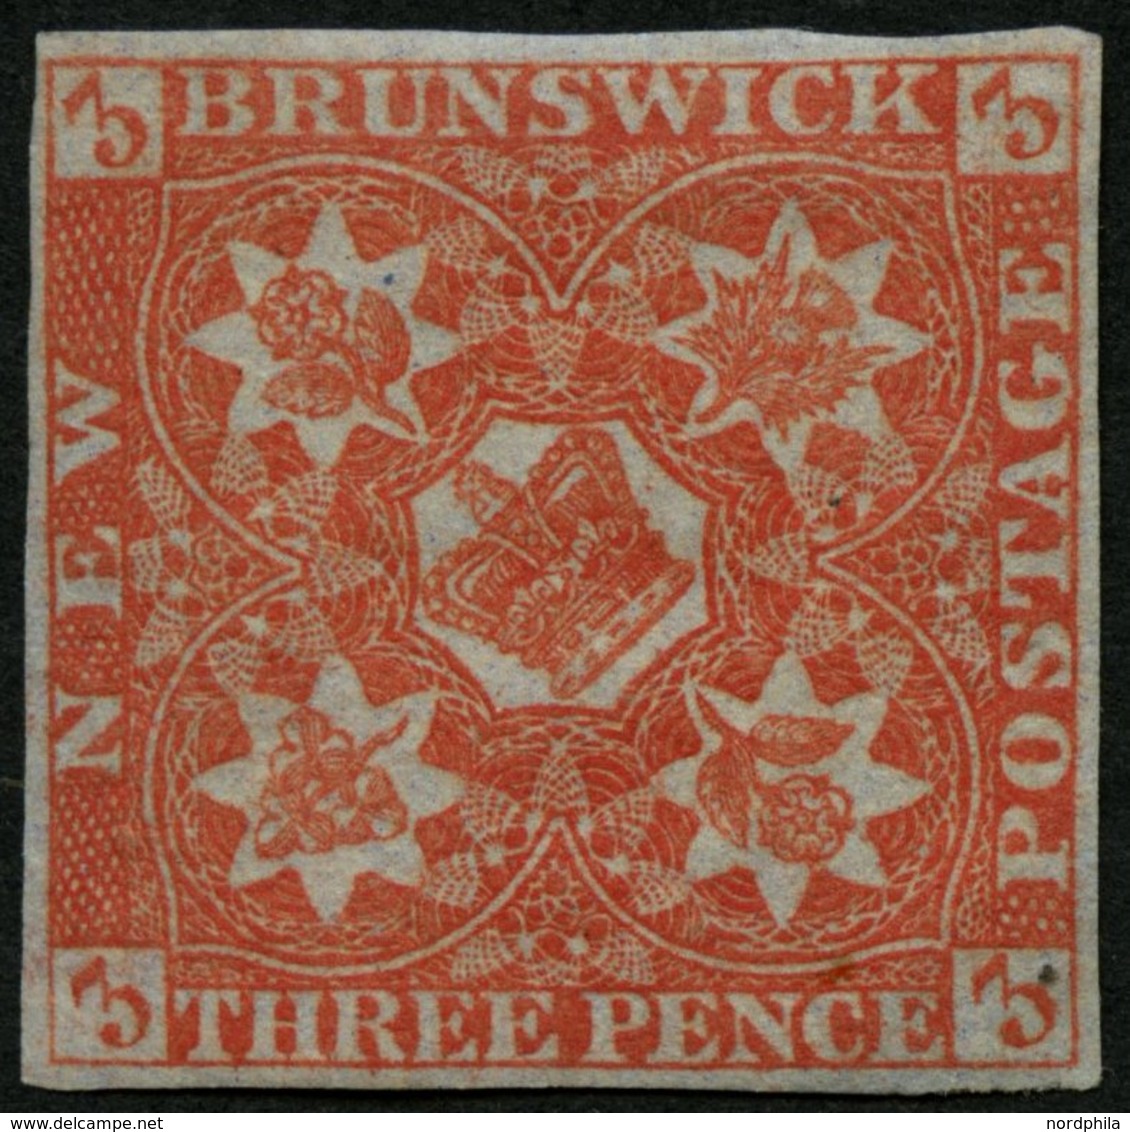 KANADA - NEUBRAUNSCHWEIG 1 *, 1851, 3 P. Rot, Falzrest, Vollrandiges Farbfrisches Prachtstück, Mi. 2800.- - Usati